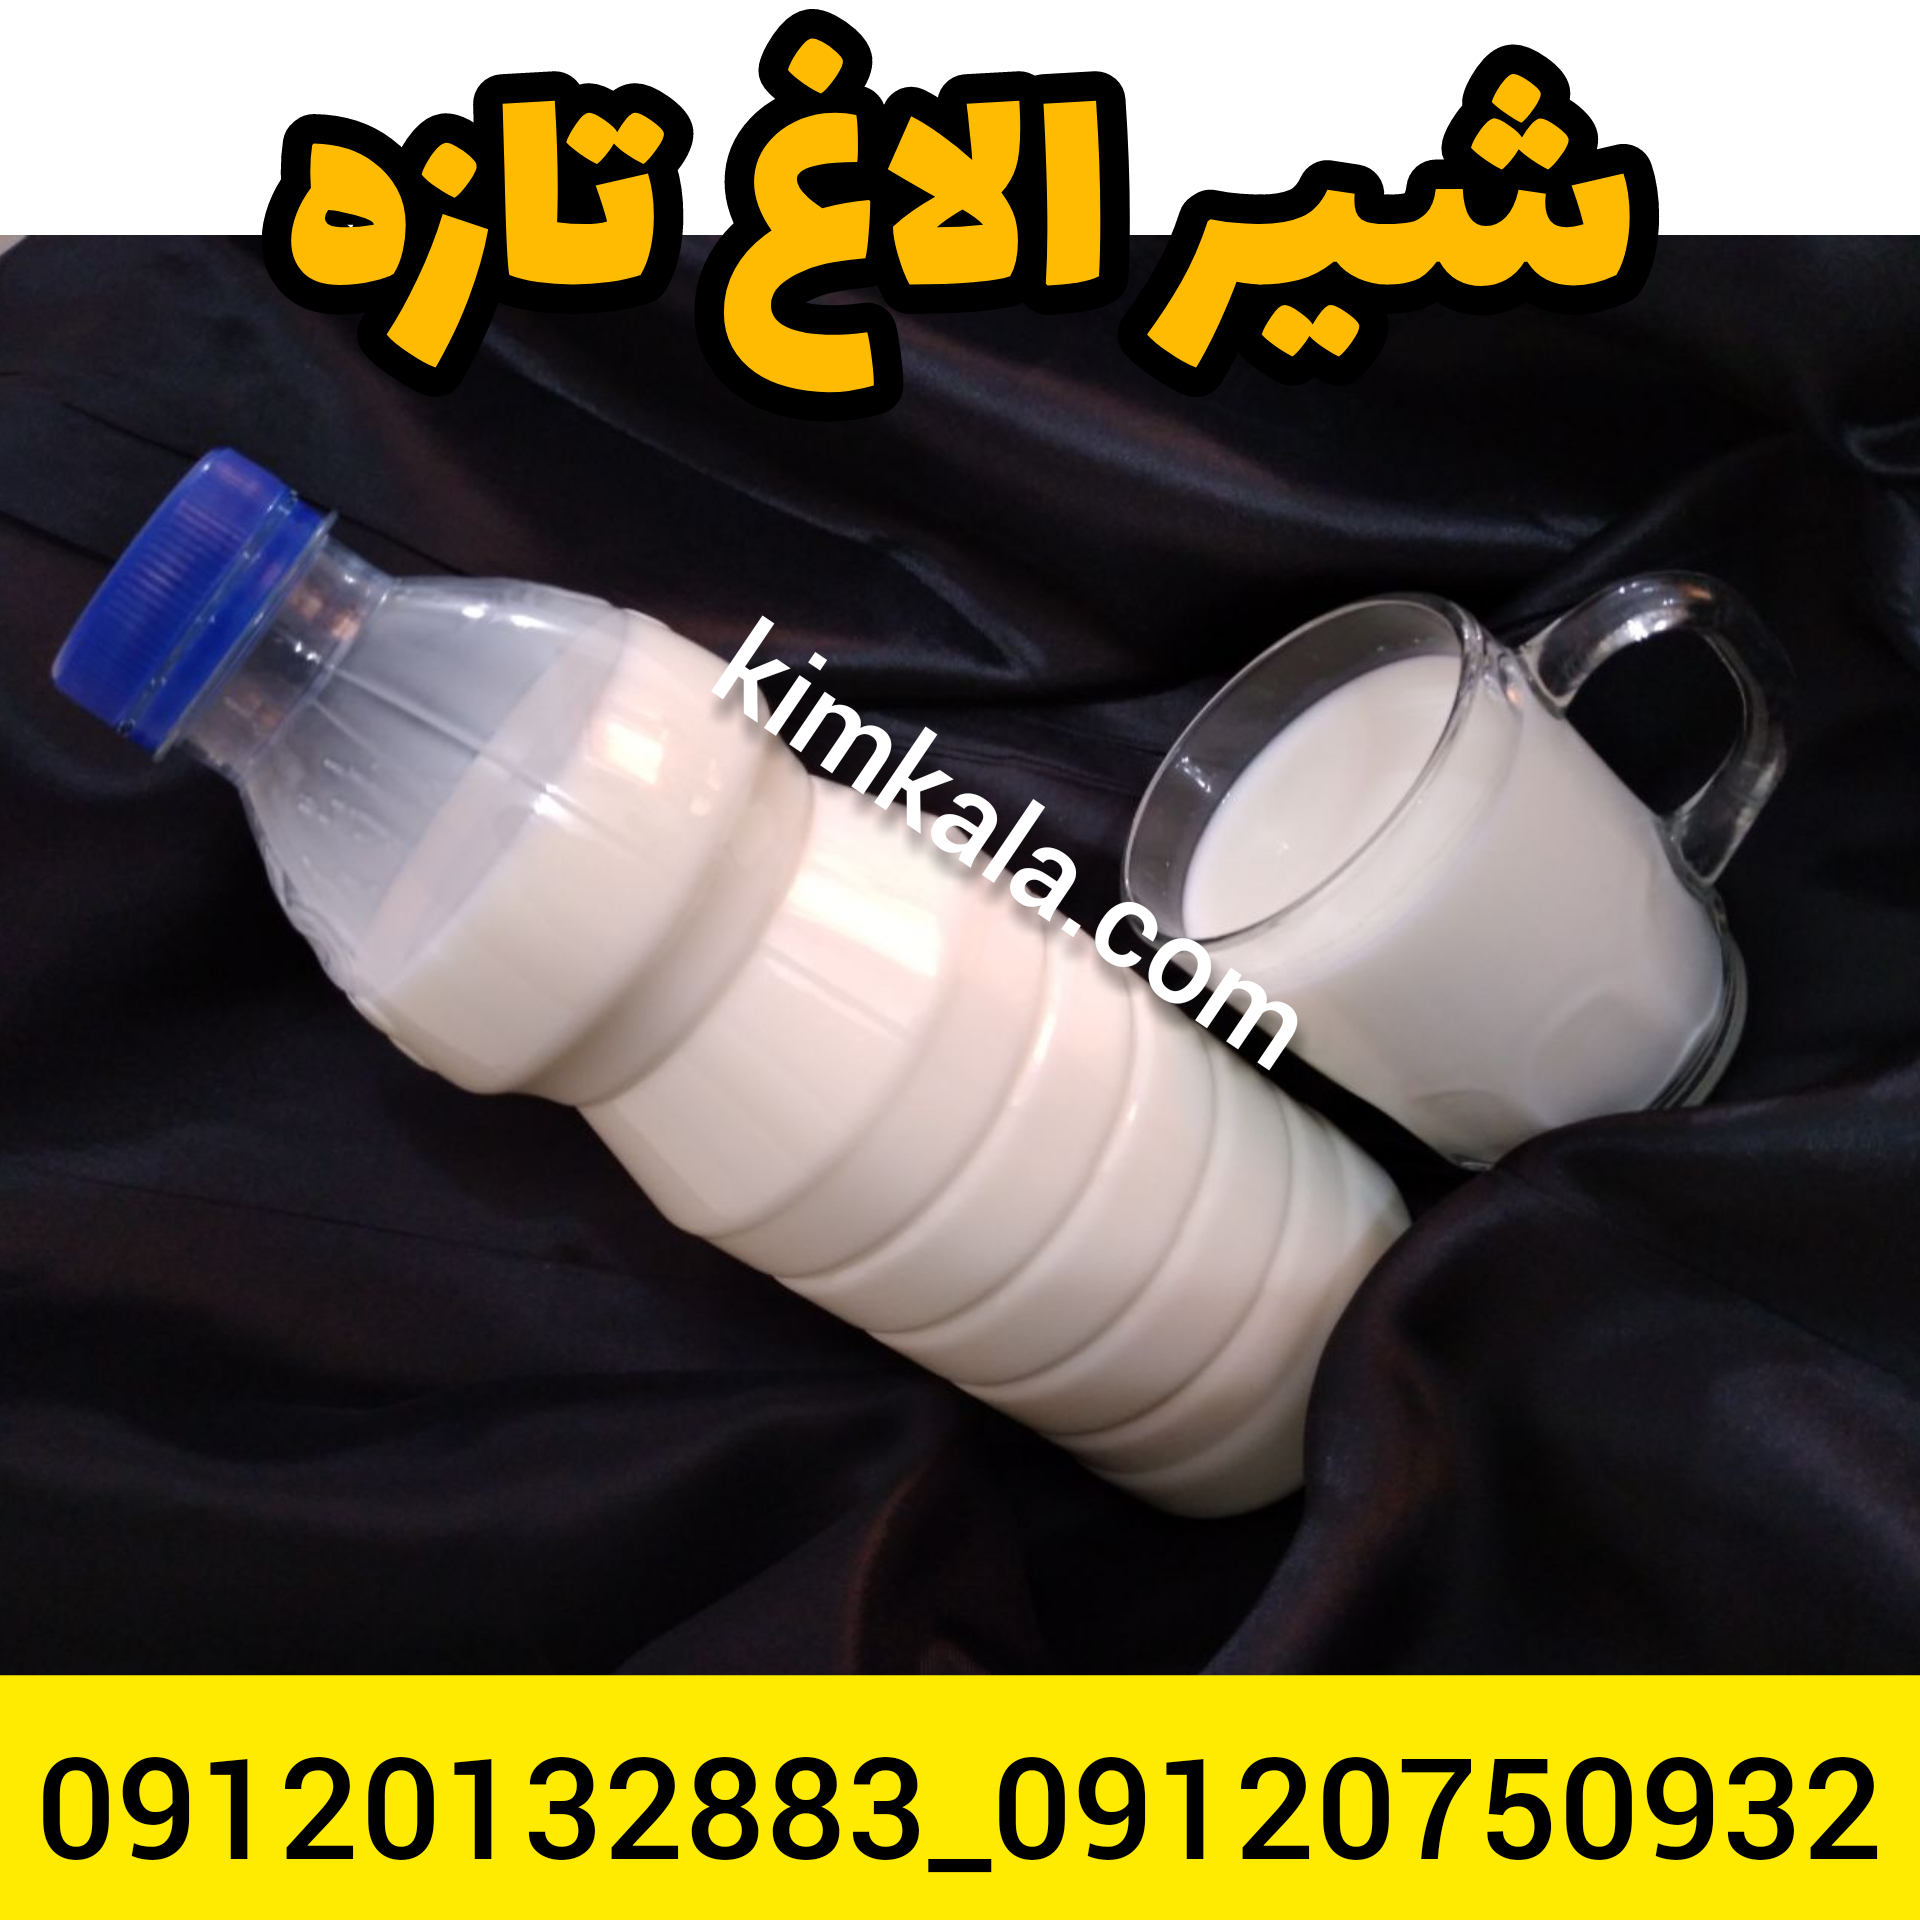 قیمت شیر الاغ/09120132883/خرید شیر الاغ تازه 